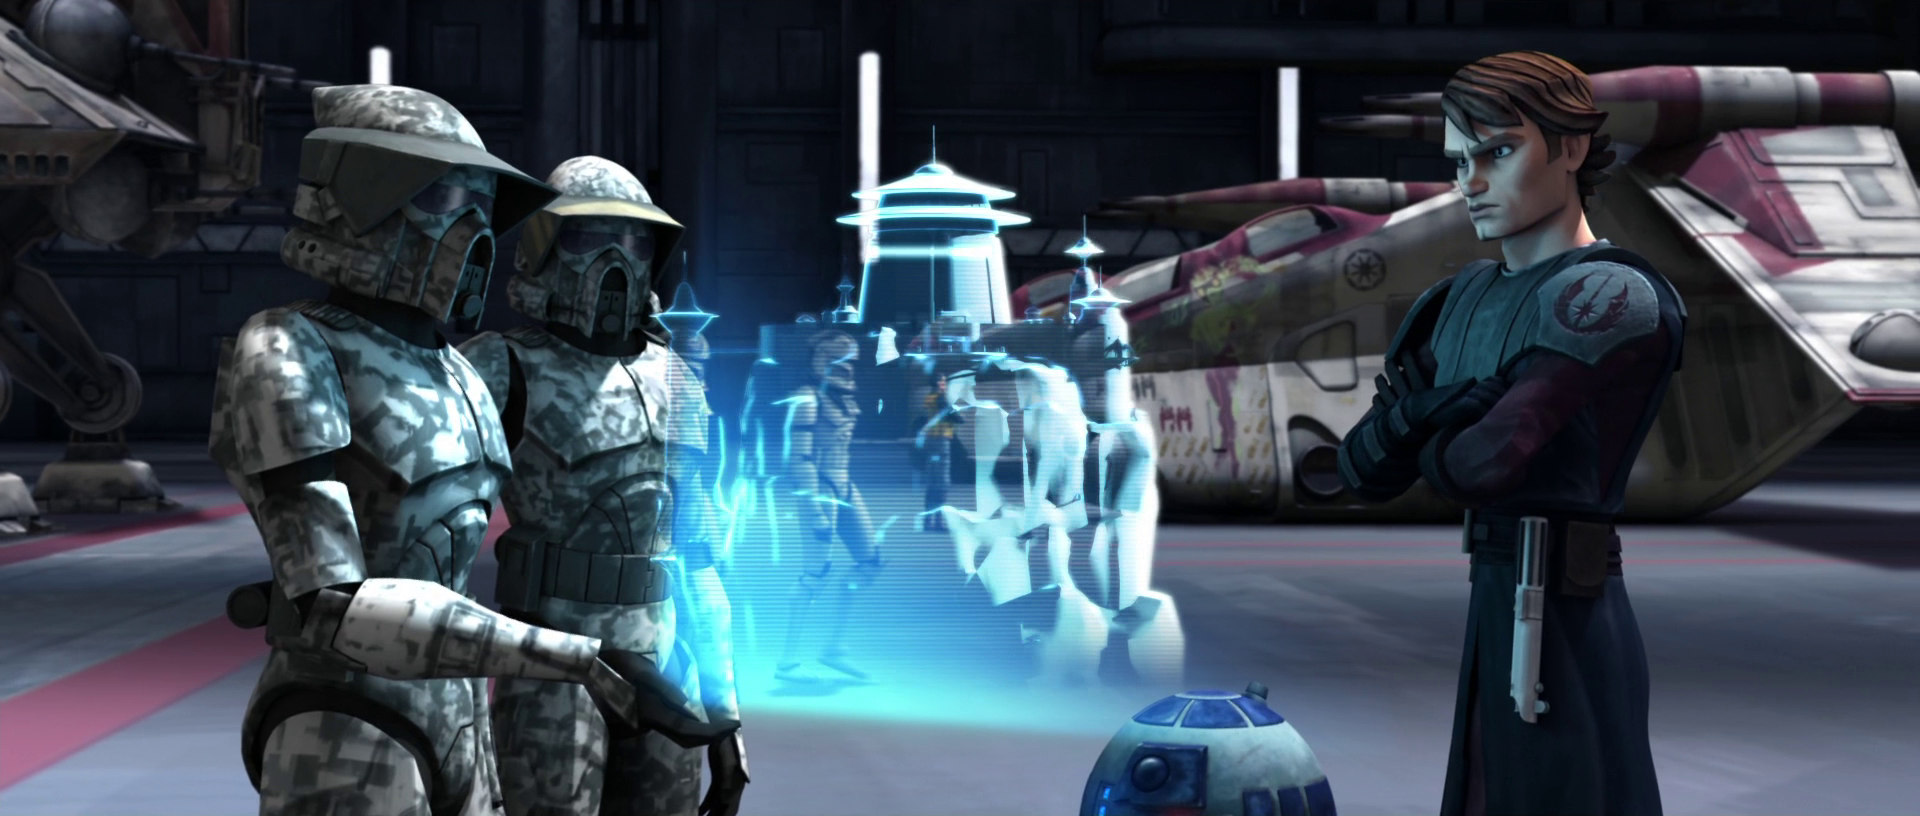 clone wars arf trooper